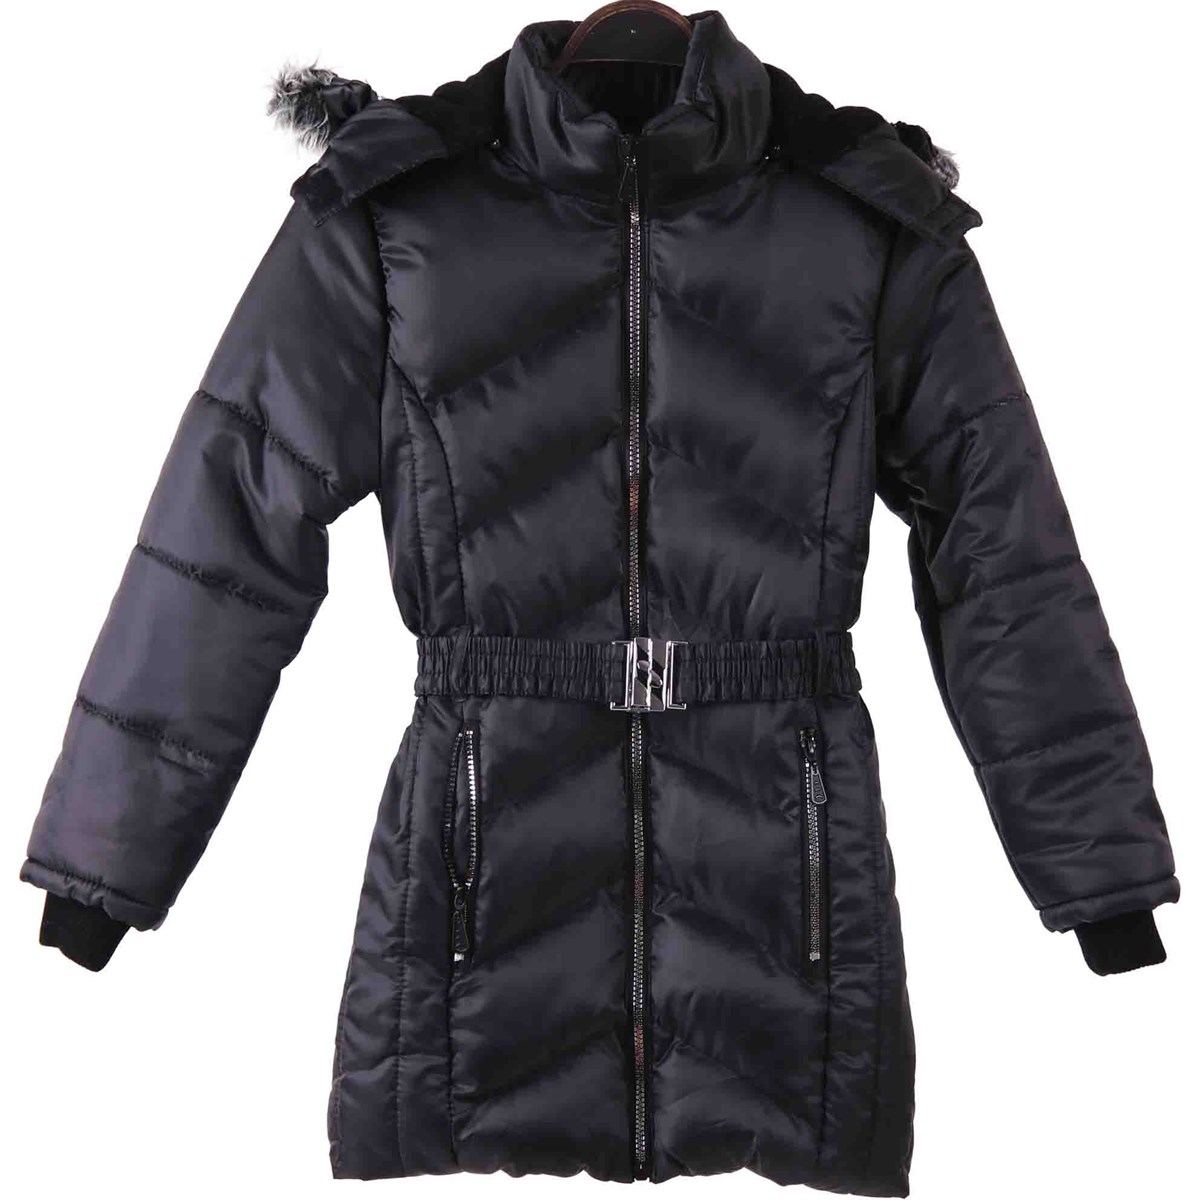 Kız Çocuk Mont Kürklü Siyah 7-8 Yaş - Sıcacık Dış Giyim | Breeze